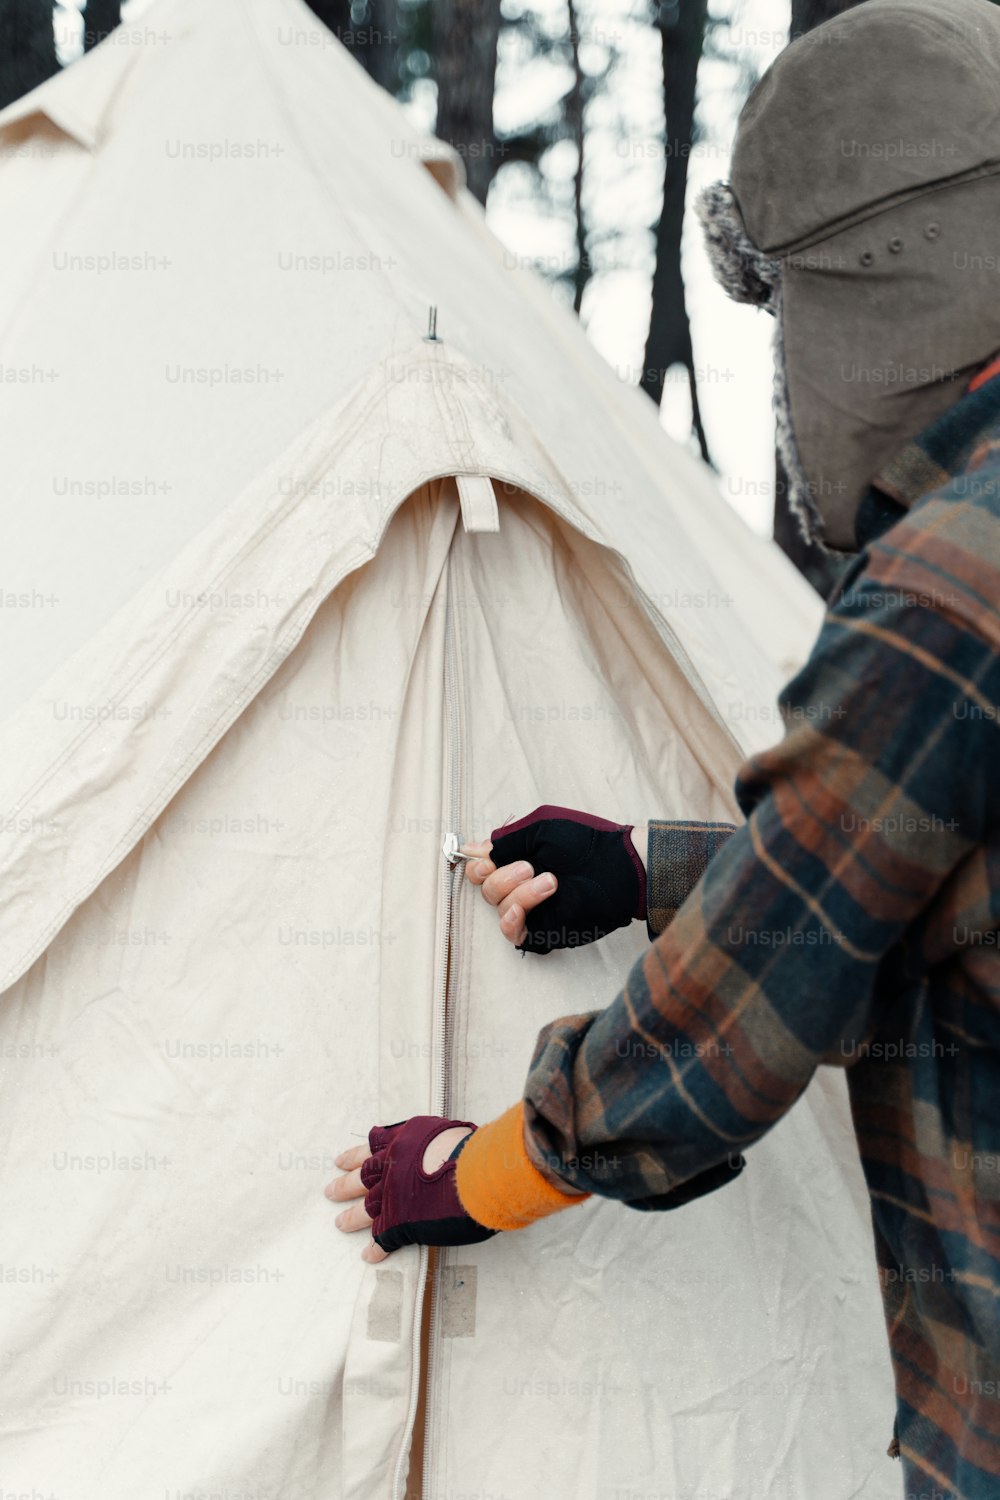 eine Person mit Handschuhen, die etwas in ein Zelt stellt